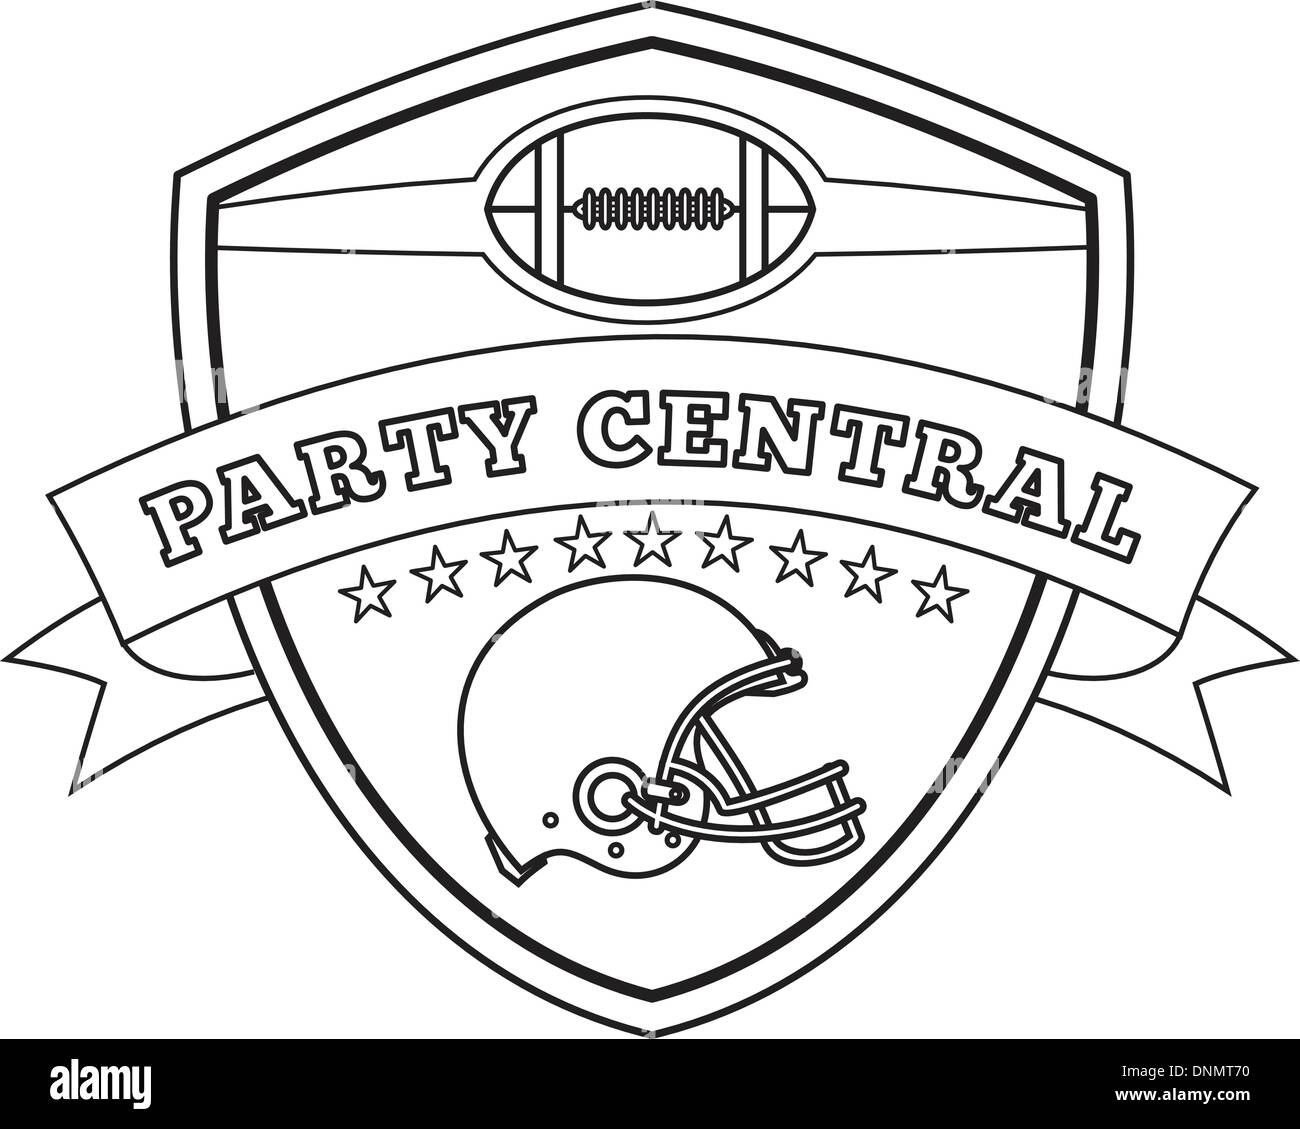 Disegno della linea illustrazione di un football americano casco insieme all'interno della protezione con stelle e scorrere visto dal lato eseguita in bianco e nero e le parole parte centrale. Illustrazione Vettoriale